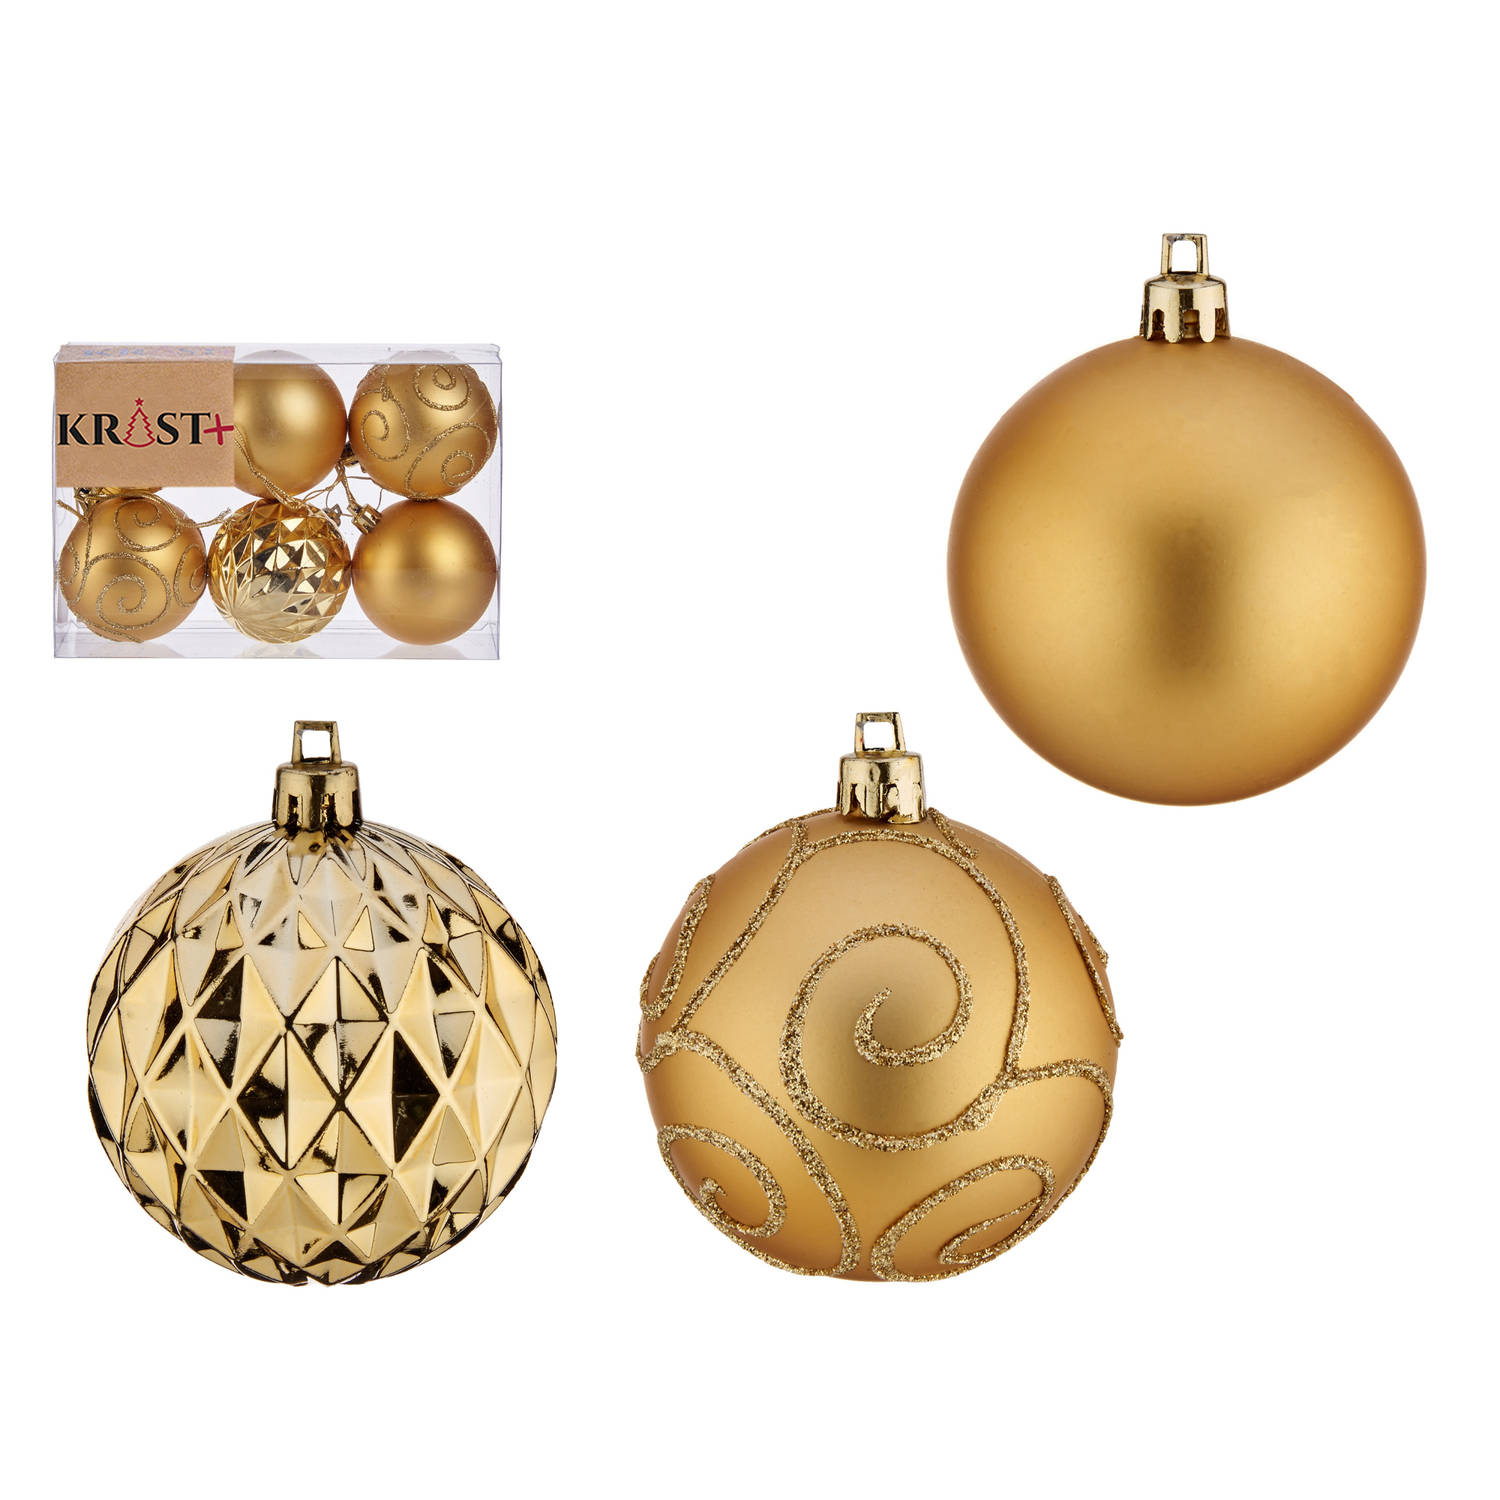 Krist+ kerstballen 6x stuks goud kunststof gedecoreerd Kerstbal